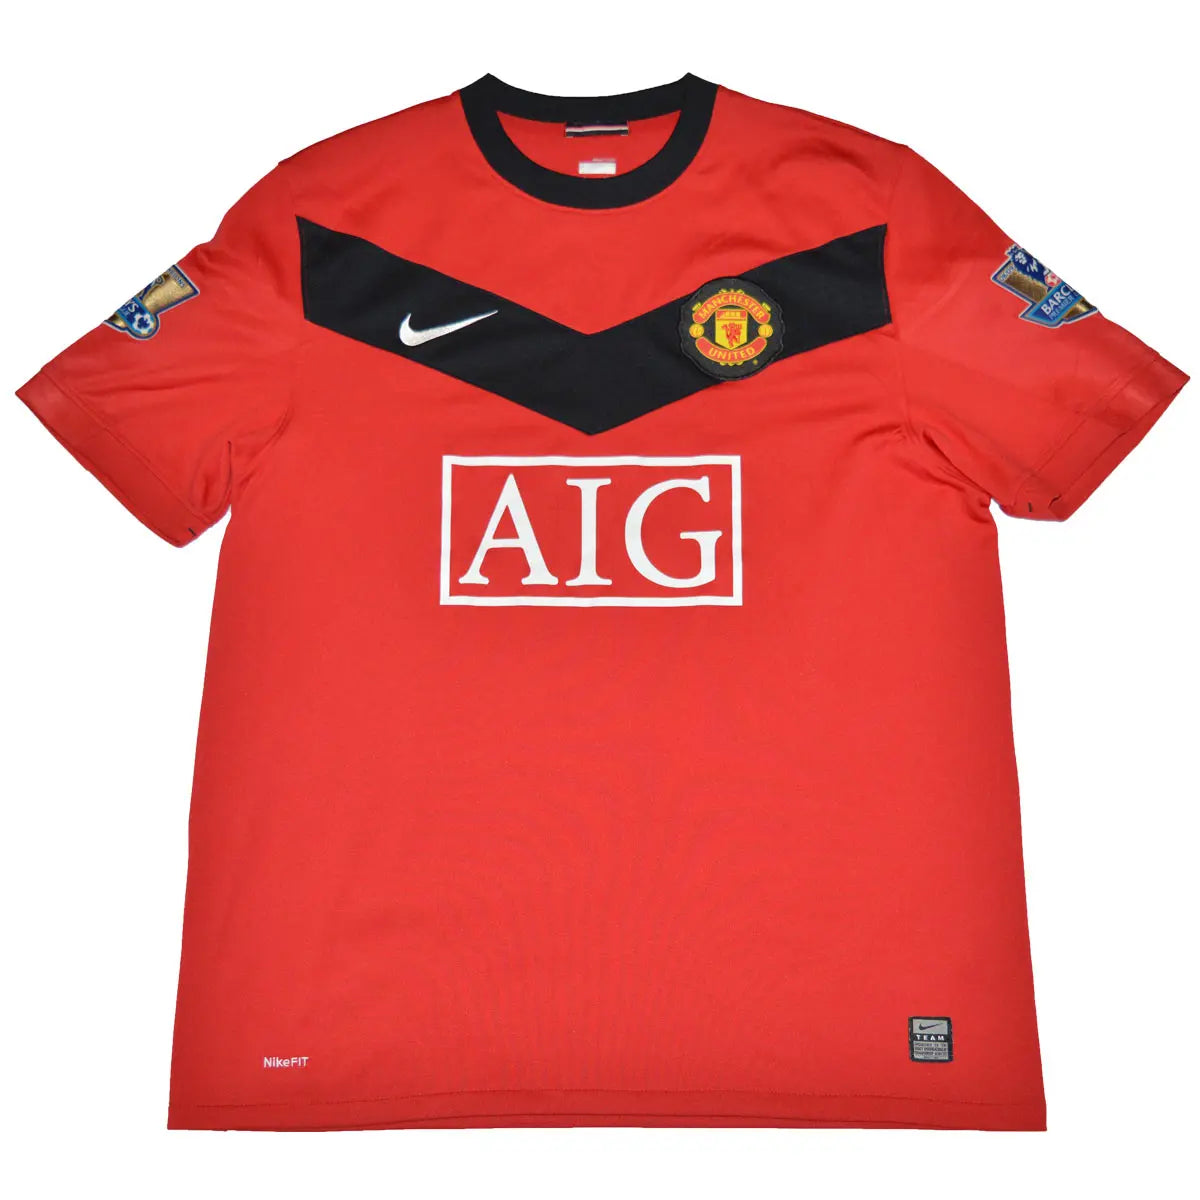 Maillot de foot rétro/vintage authentique rouge domicile nike Manchester United 2009-2010 Owen